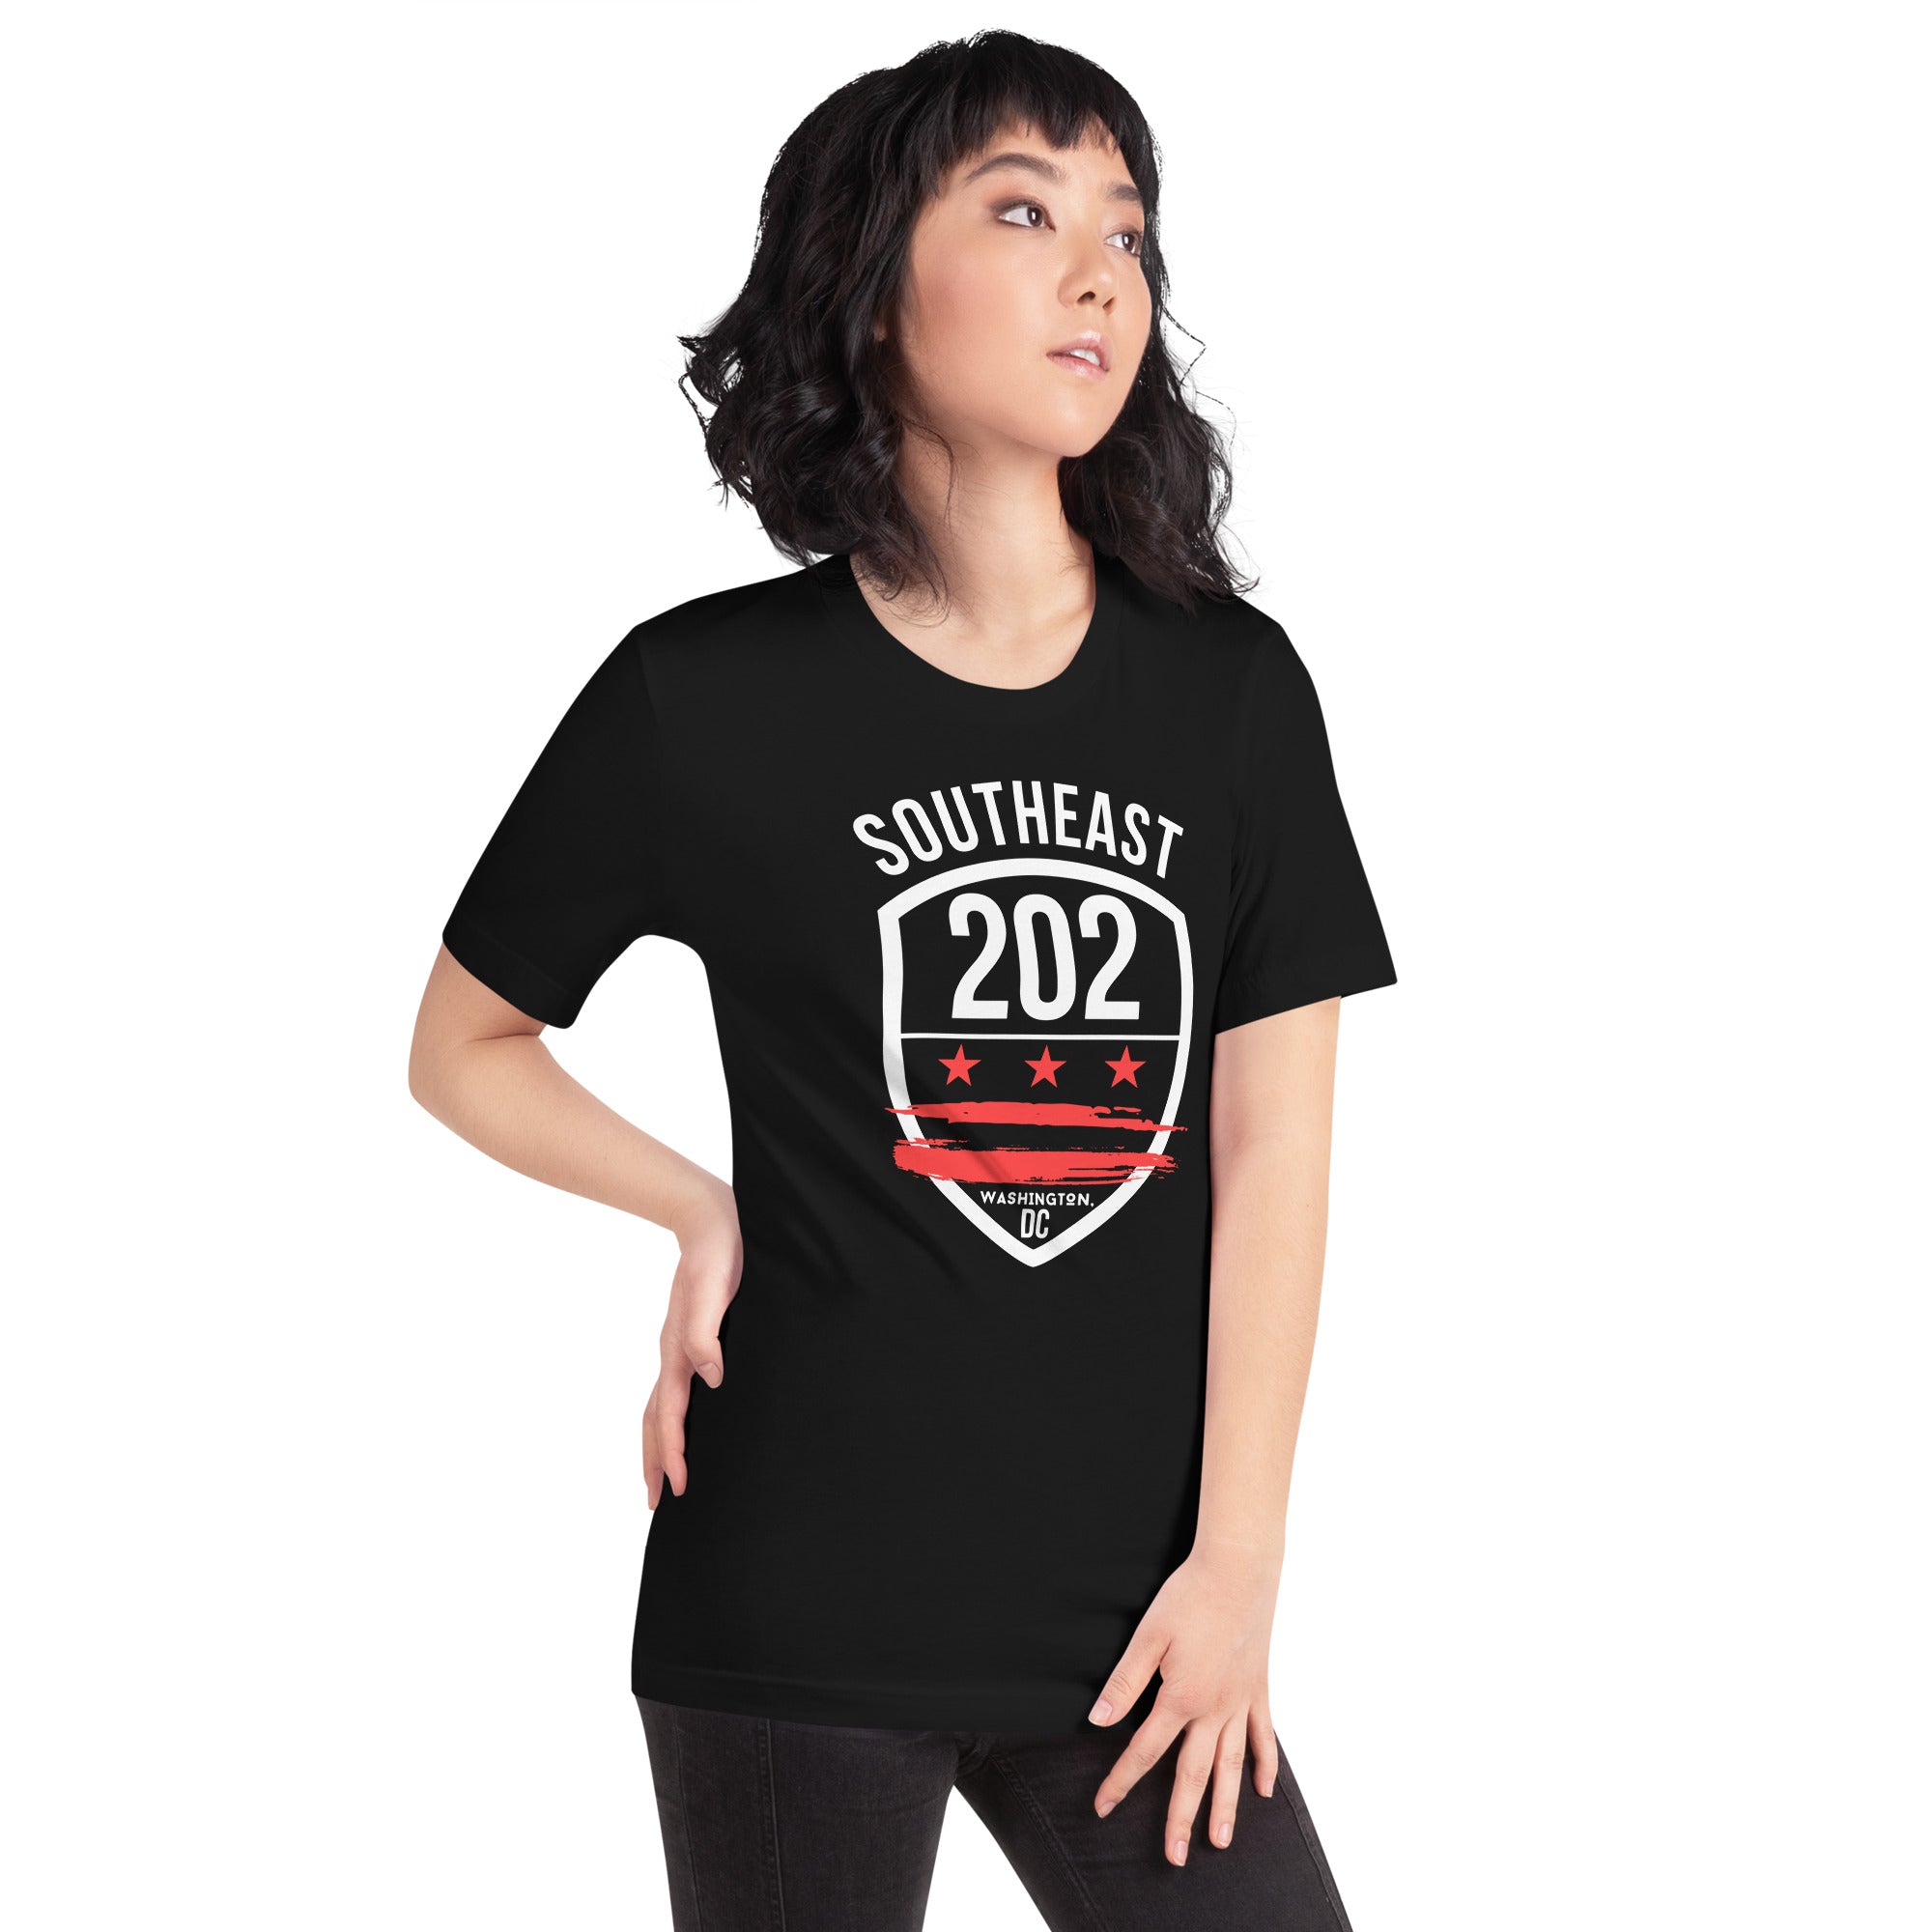 'Southeast DC/ 202 Washington, DC' (Emblem Front Only) Black Unisex T-shirt